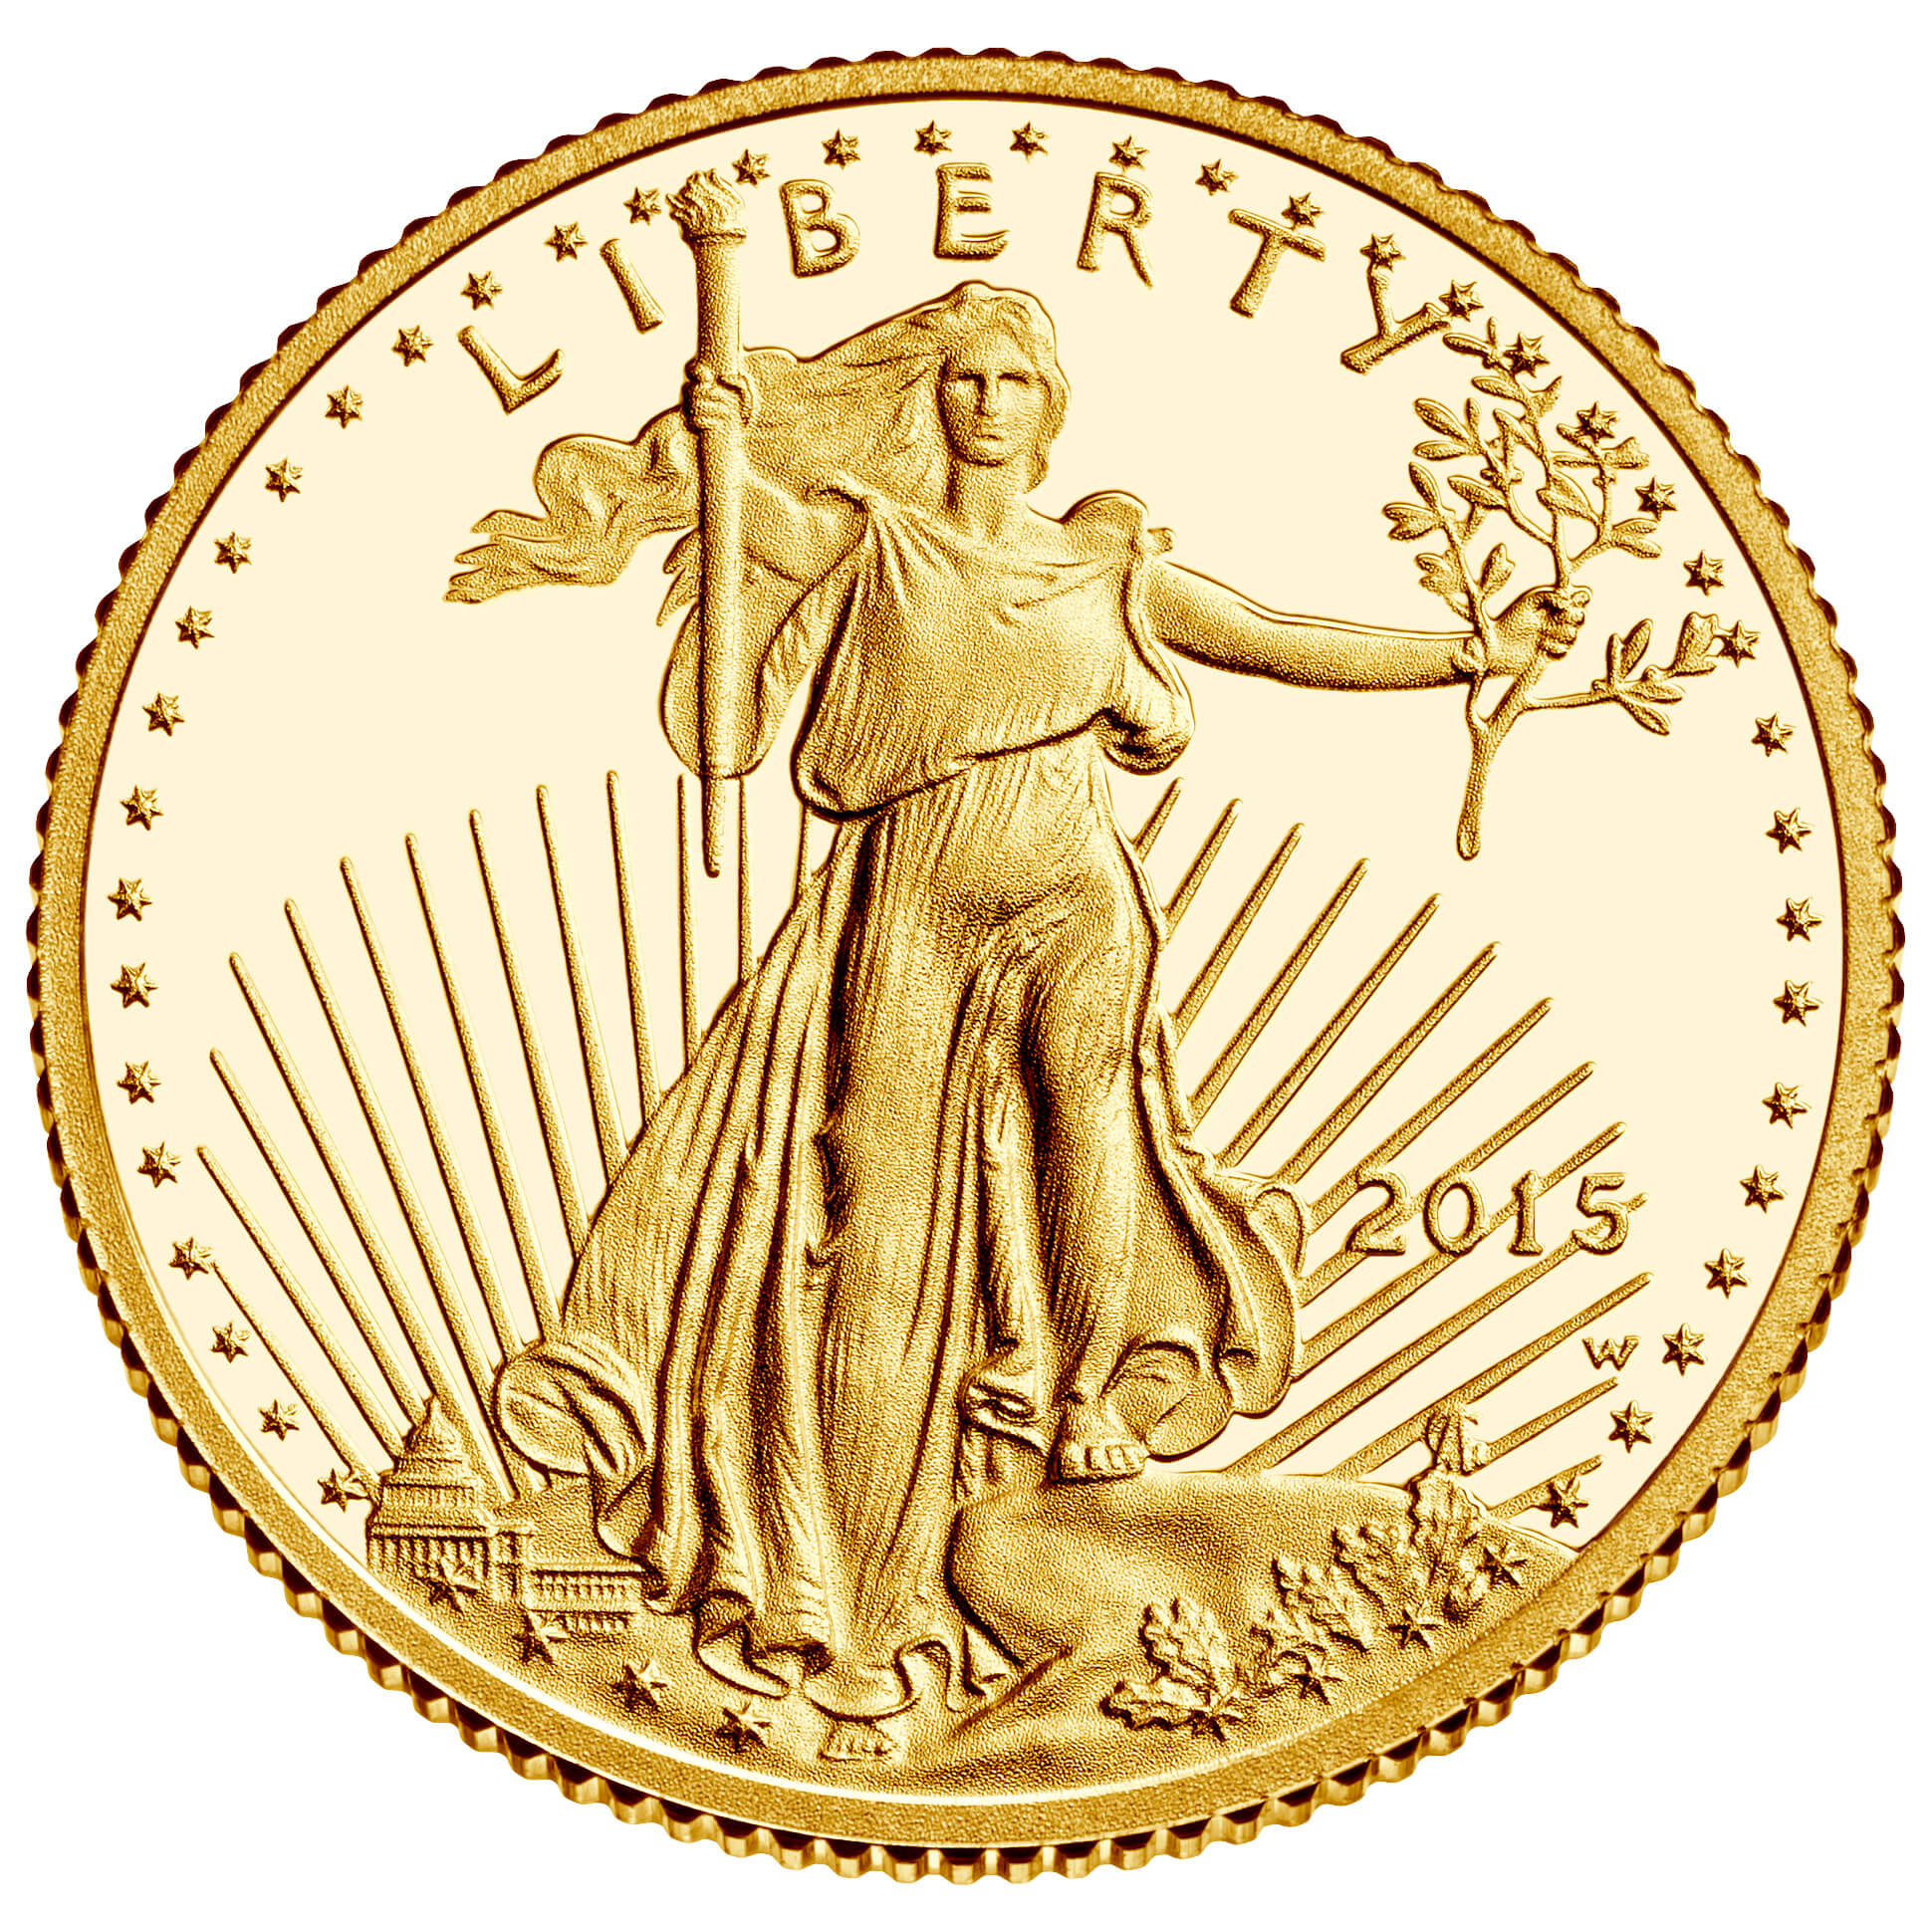 US 5 Dollars 2015 W